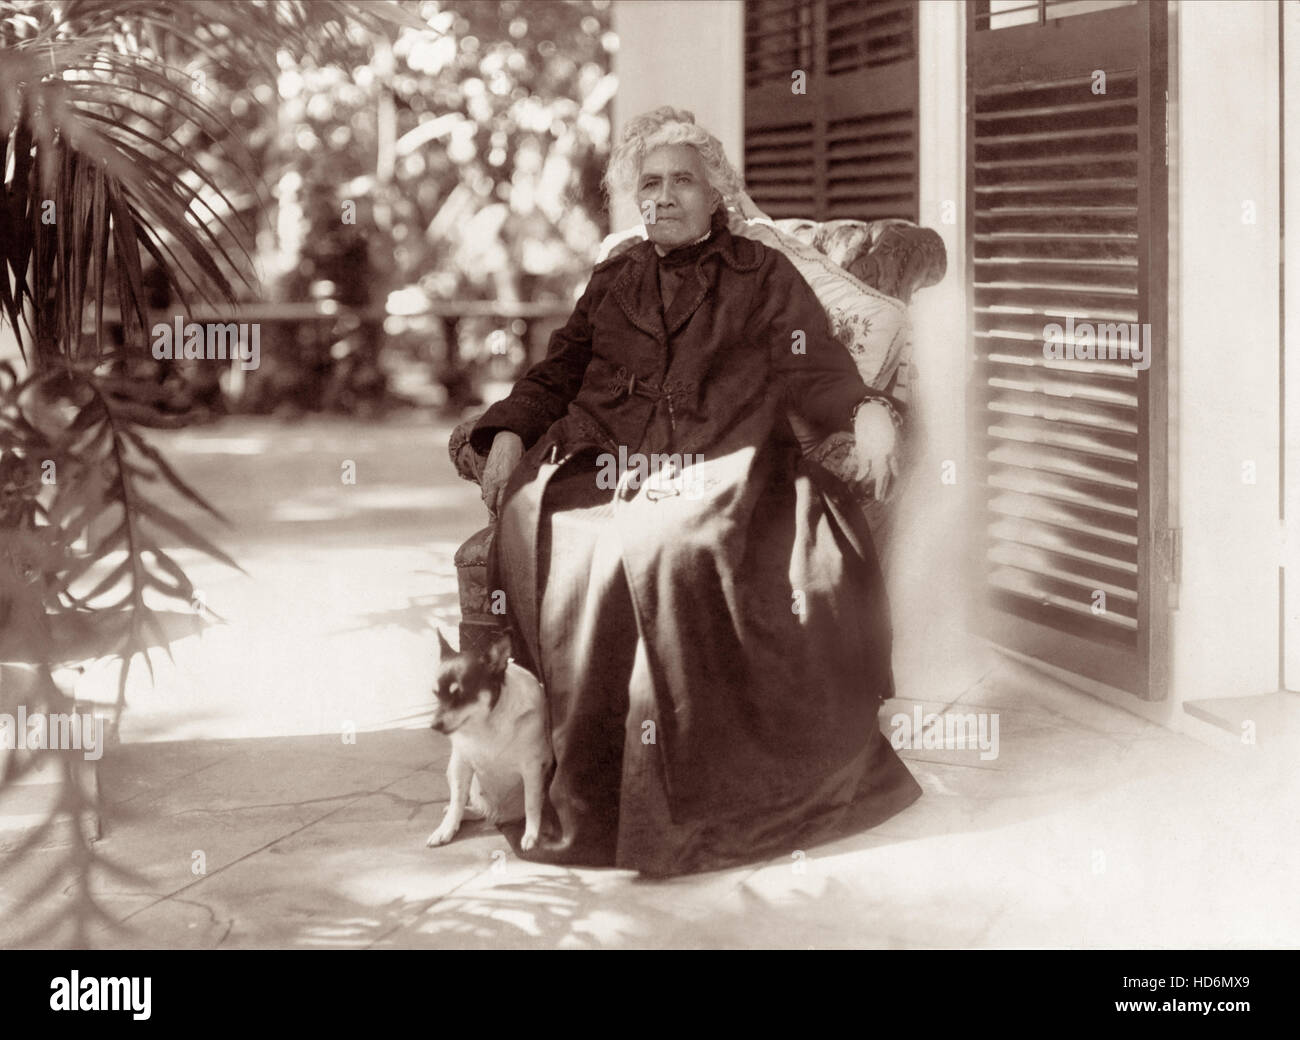 La Reine Liliuokalani (1838-1917) était le royaume de la première reine et dernière règle souveraine. Elle a régné de 1891 jusqu'en 1893 lorsque la monarchie a été renversée. (Photo c1917) Banque D'Images